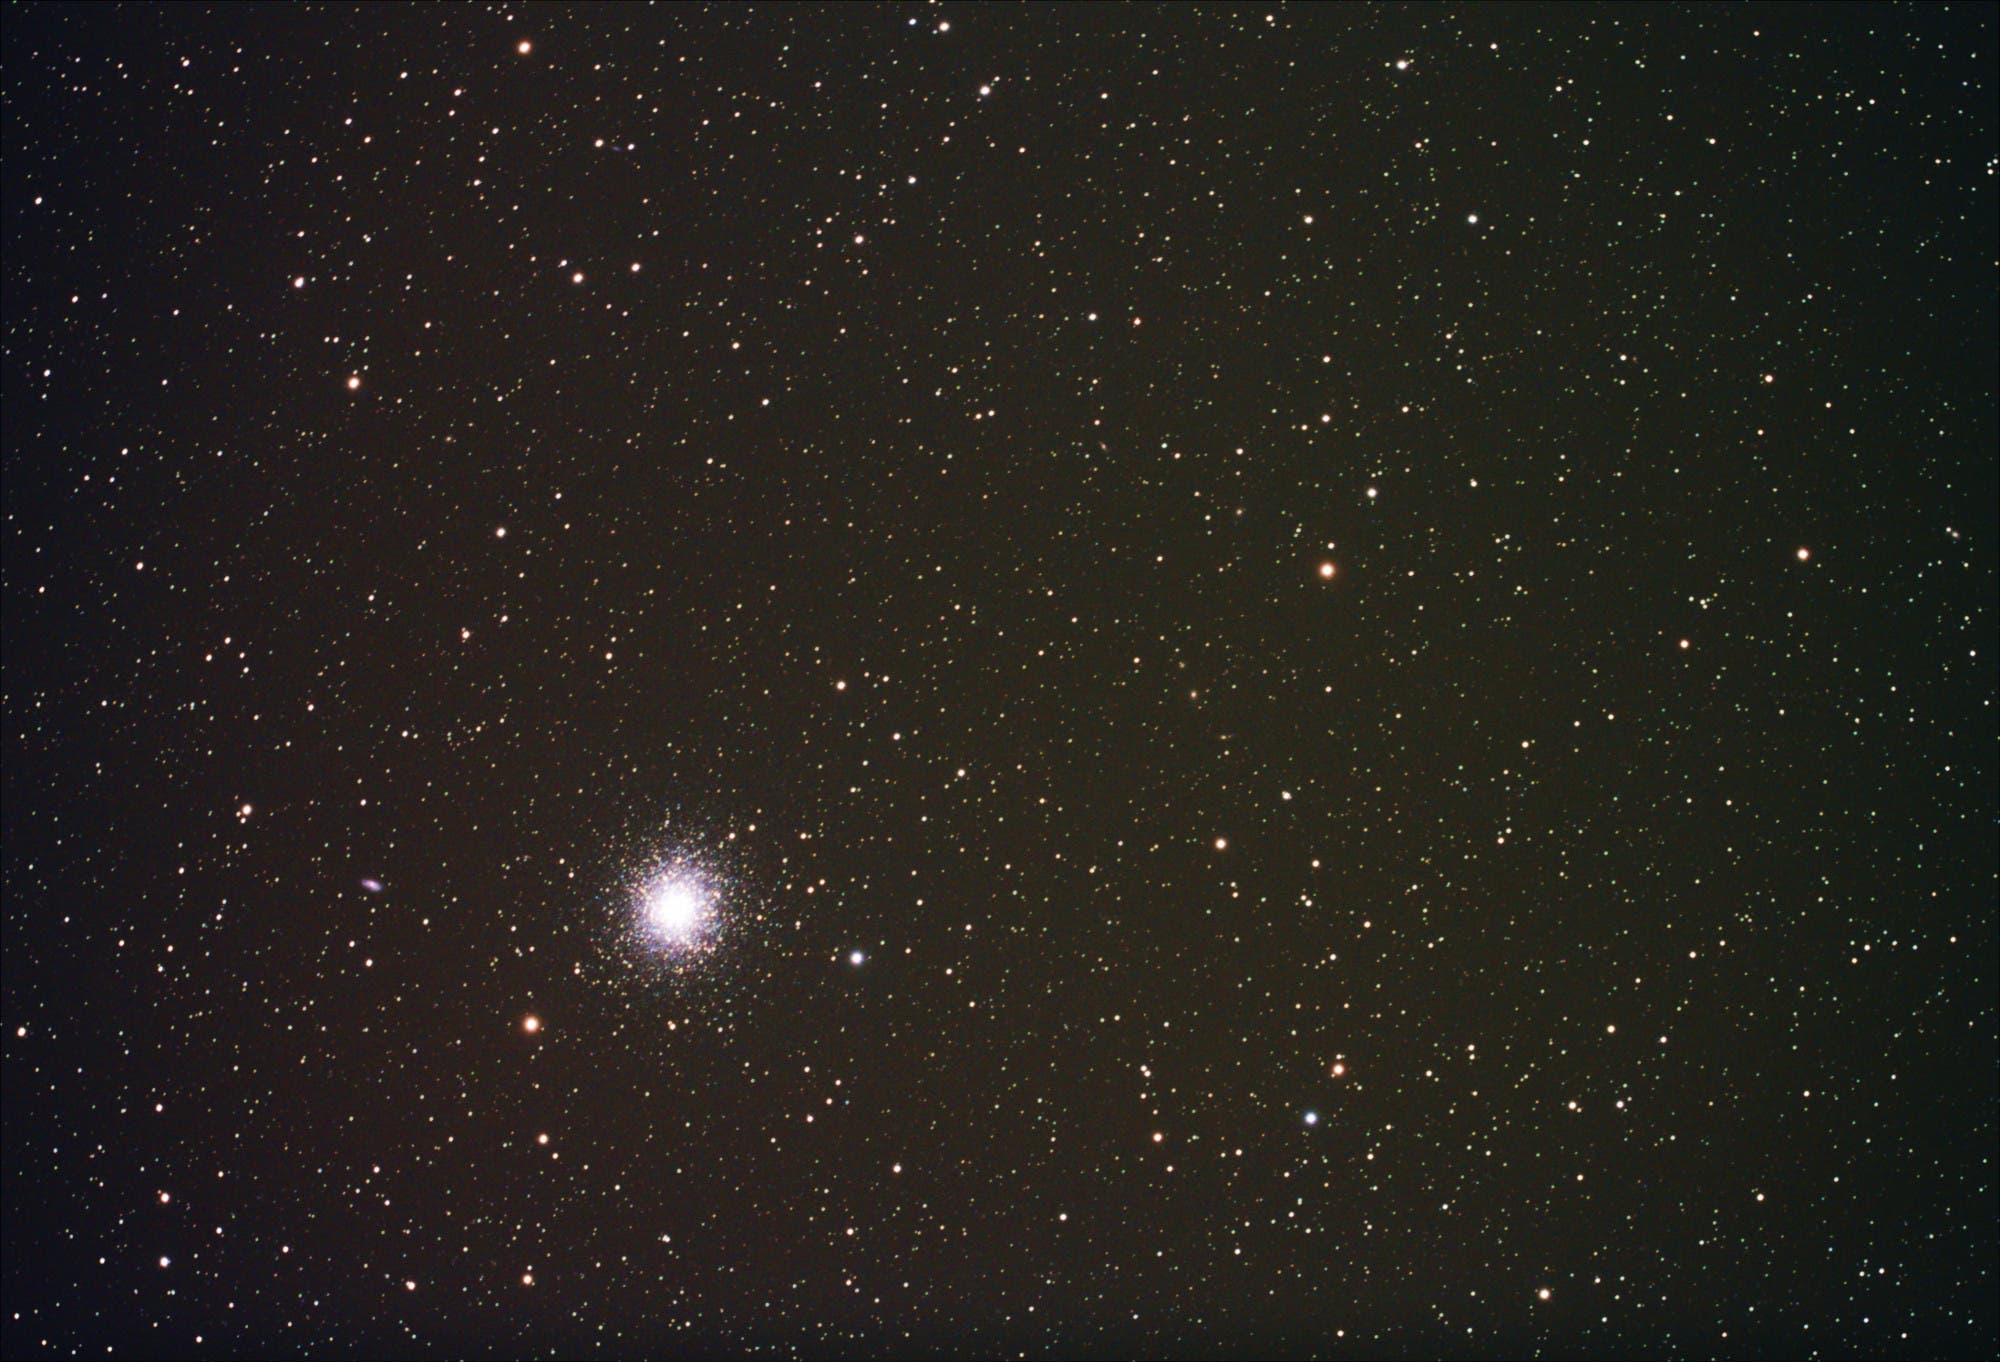 Kugelsternhaufen Messier 13 im Sternbild Herkules